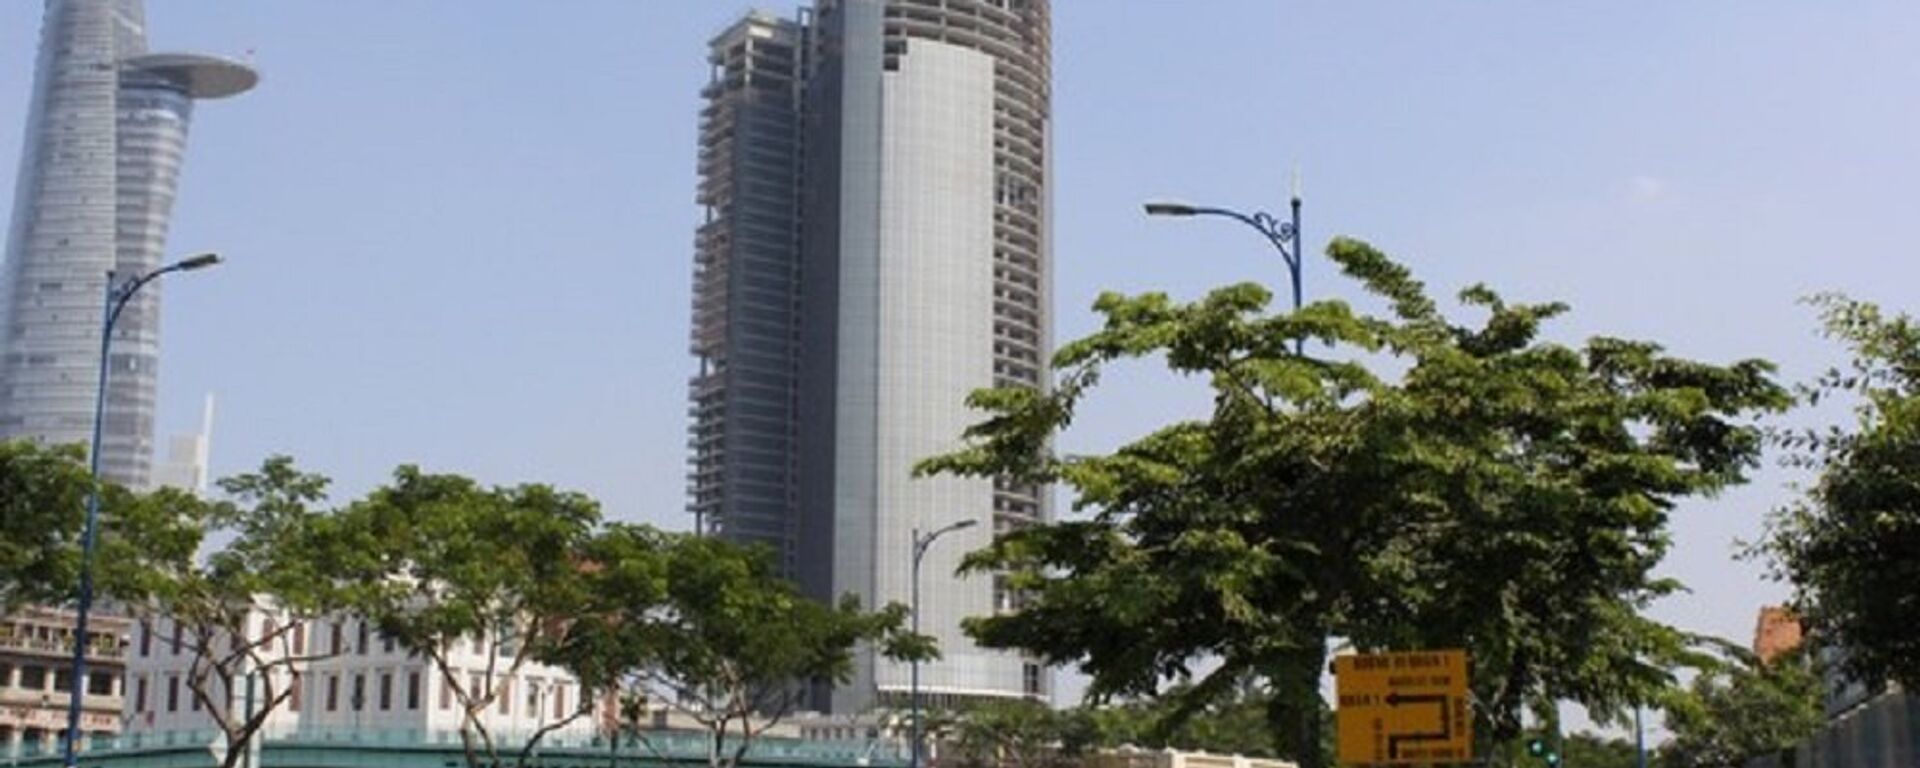 VAMC đã yêu cầu Công ty CP Sài Gòn One Tower bàn giao tài sản bảo đảm để thực hiện nghĩa vụ bảo đảm đối với toàn bộ nghĩa vụ của các khách hàng - Sputnik Việt Nam, 1920, 21.08.2017